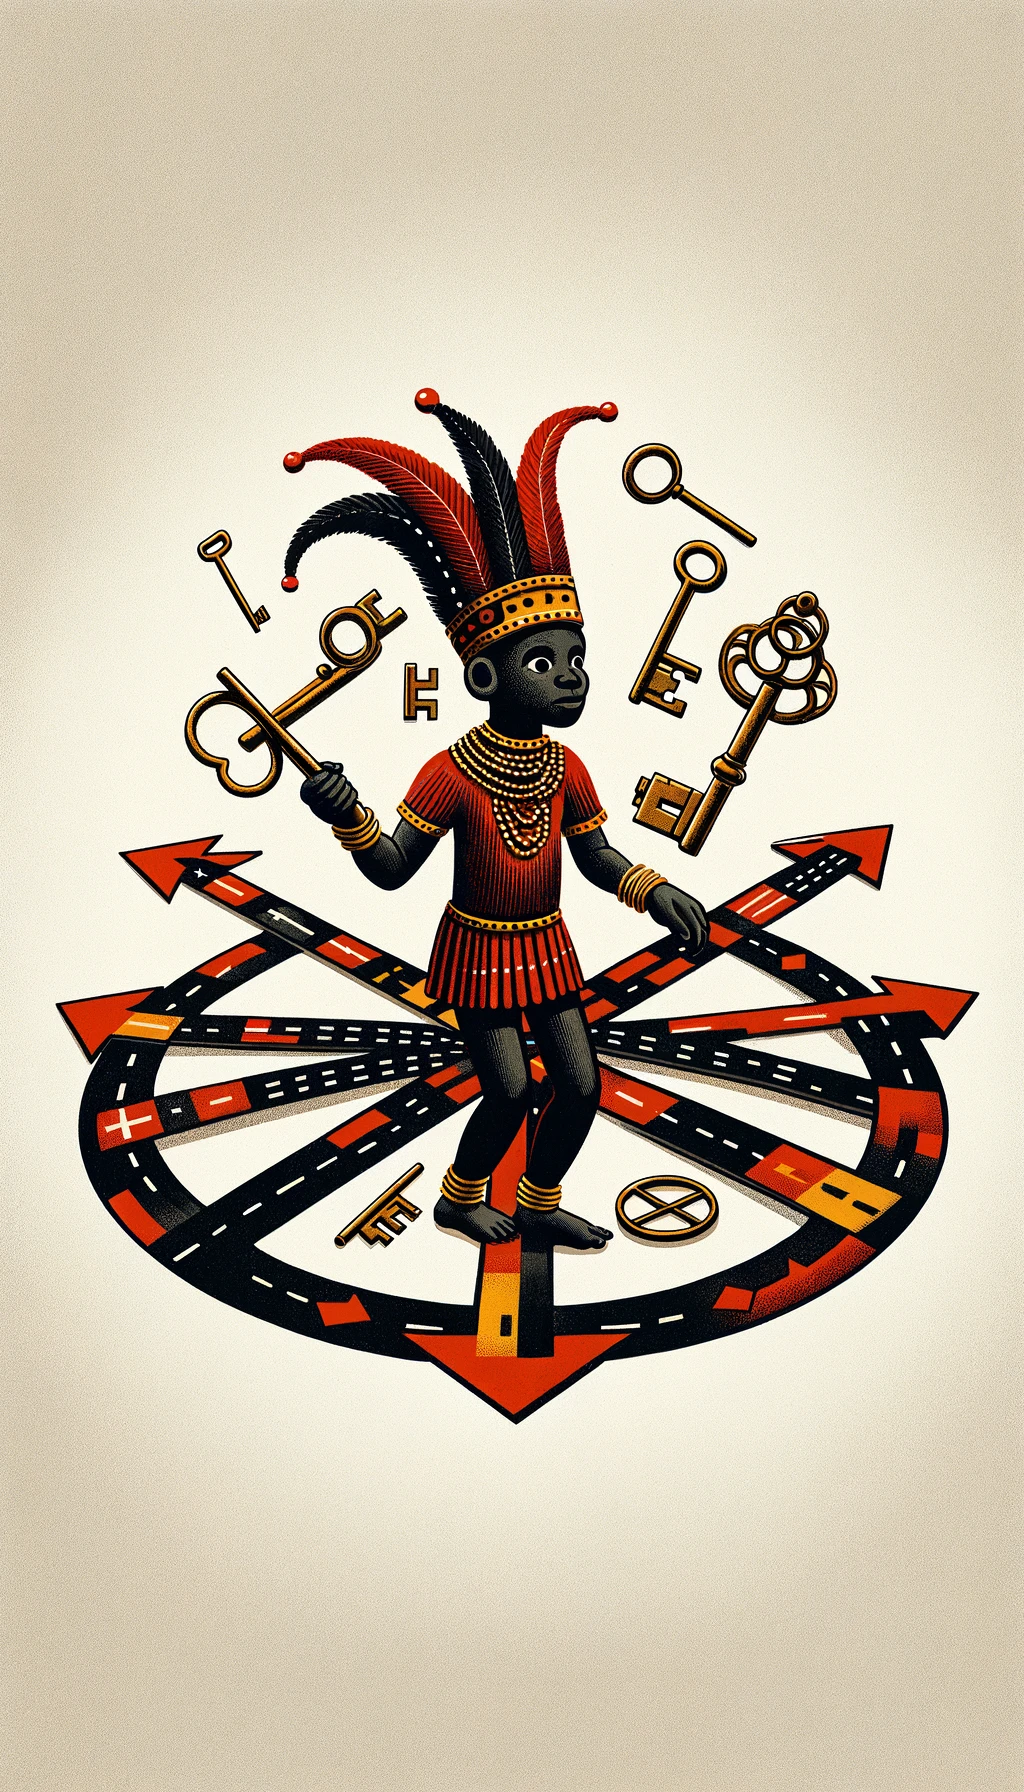 Imagen de Eleguá, deidad de la religión yoruba, con un sombrero rojo y negro, de pie en una encrucijada, rodeado de llaves y caminos, simbolizando su rol como guardián de los caminos y mensajero de los Orishas.